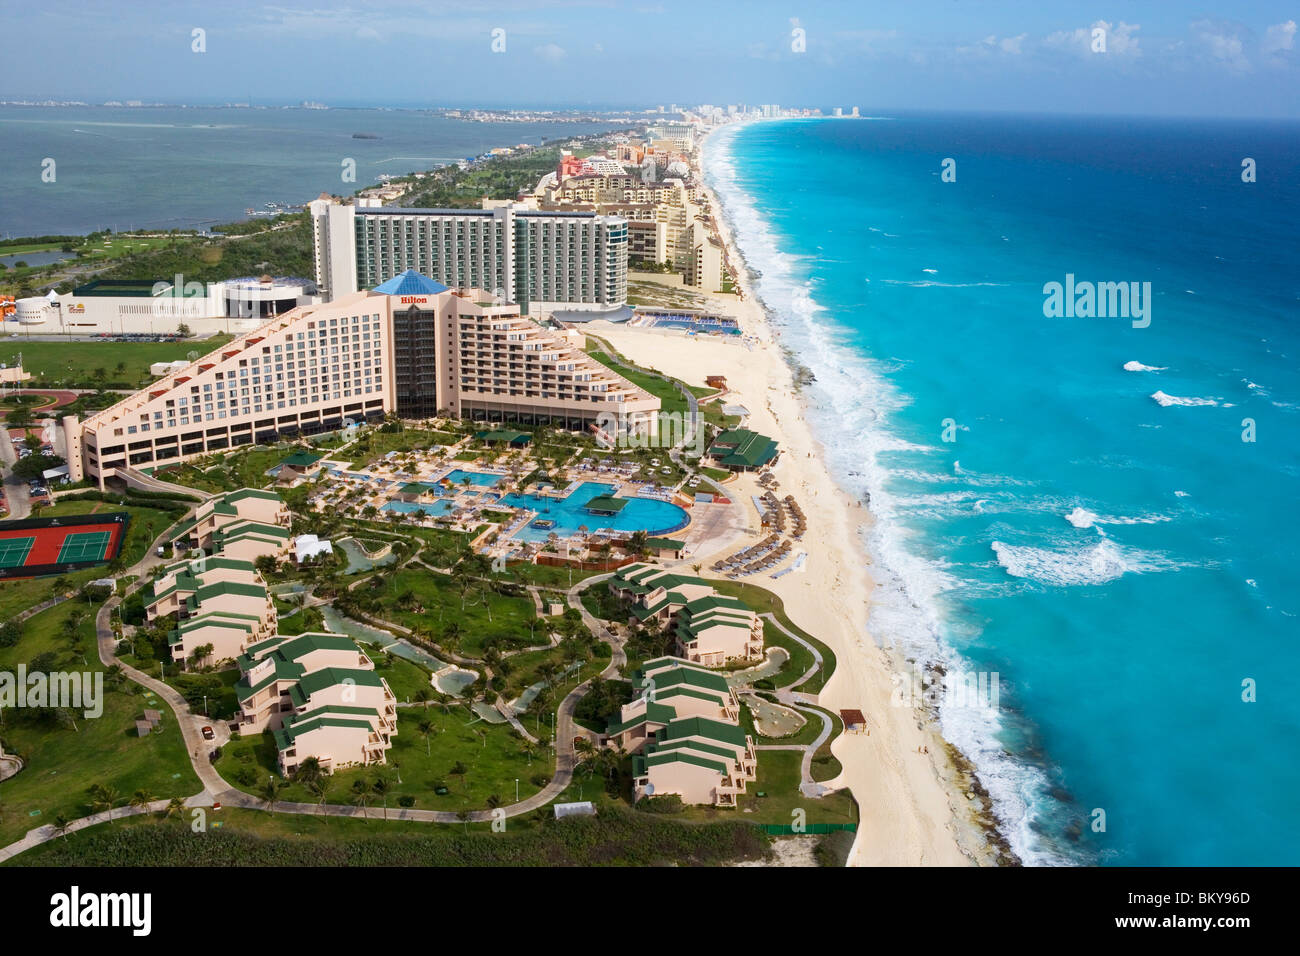 Aerial Of The Hilton Cancun Spa Resort In The Zona Hotelera Cancun